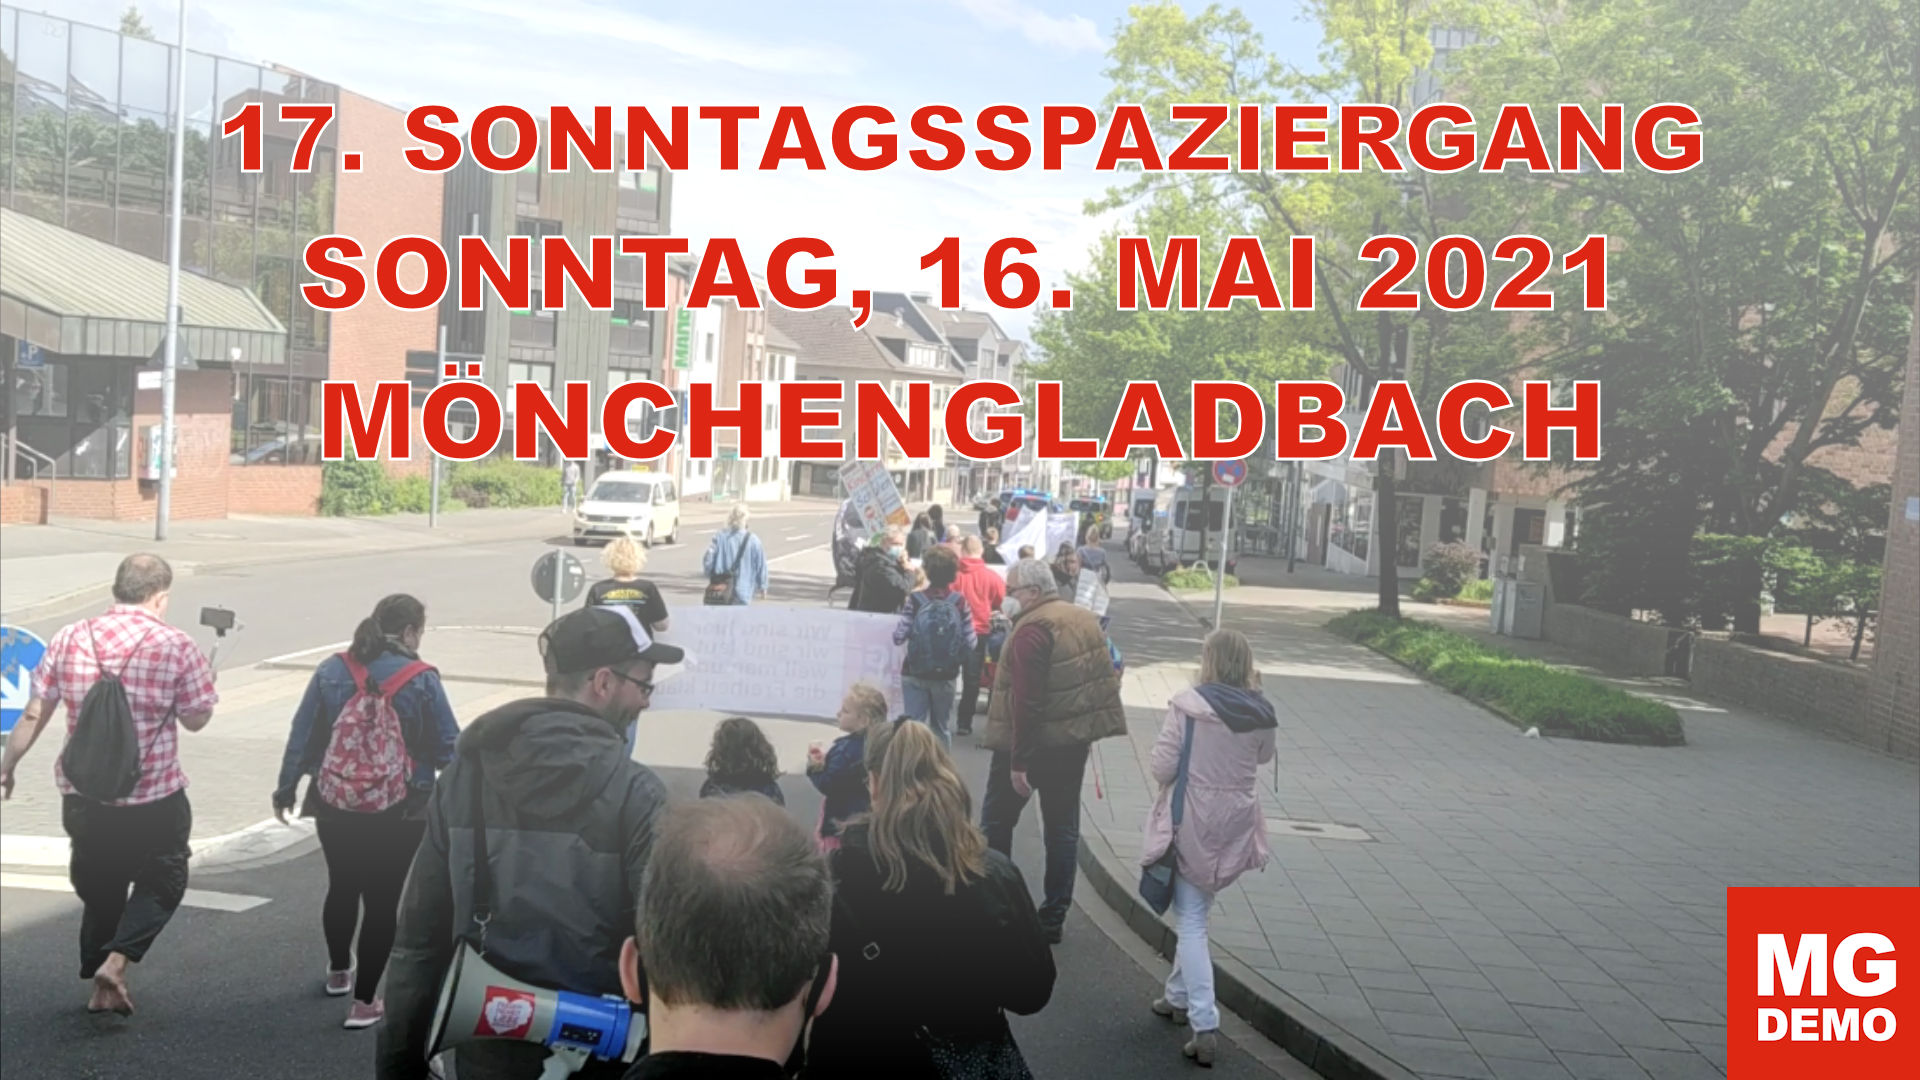 17. MG DEMO Sonntagsspaziergang am 16.05.2021 in Mönchengladbach und Rheydt